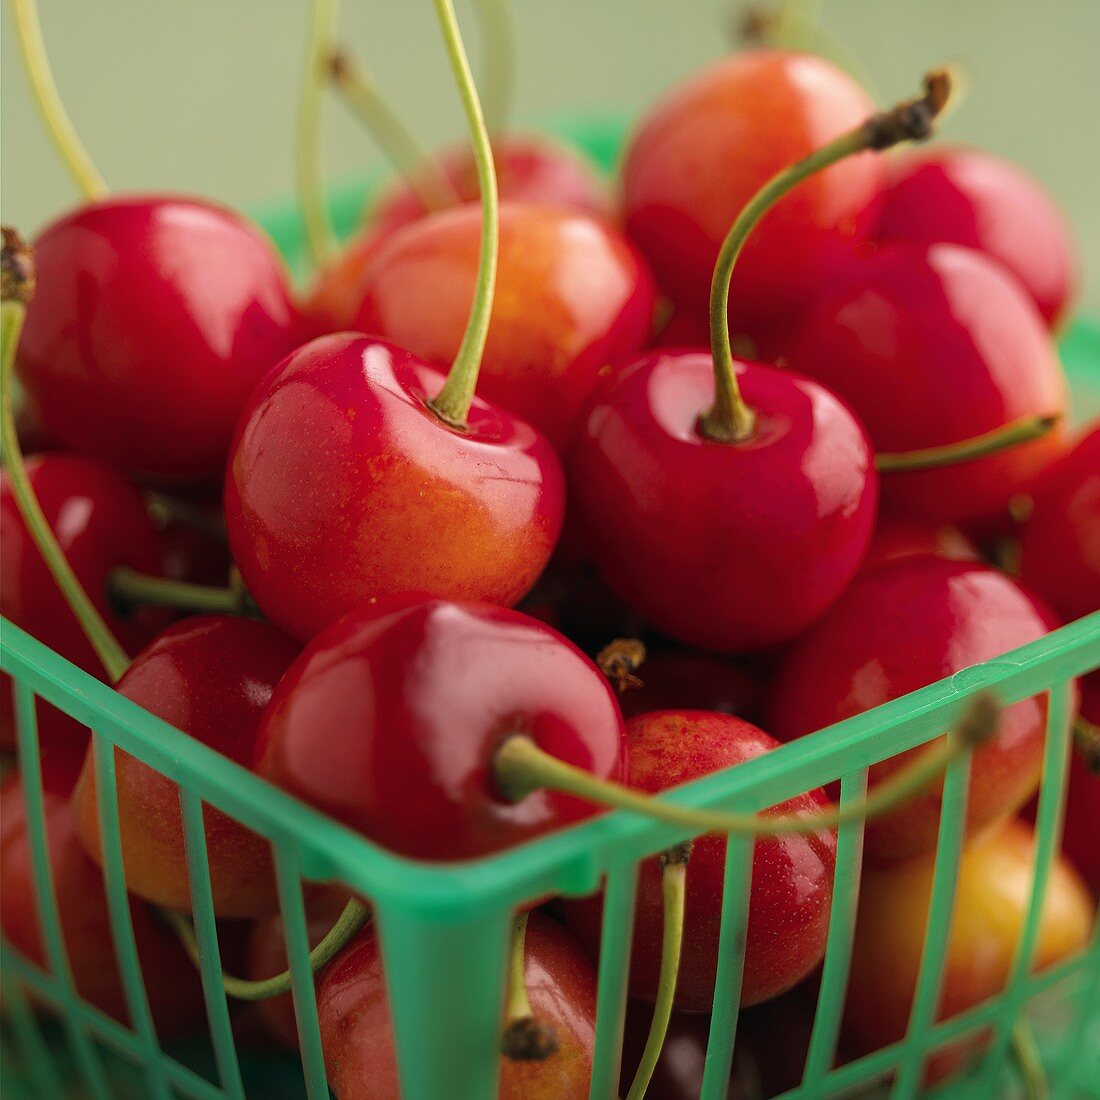 Cherries in a plastic basket (detail)